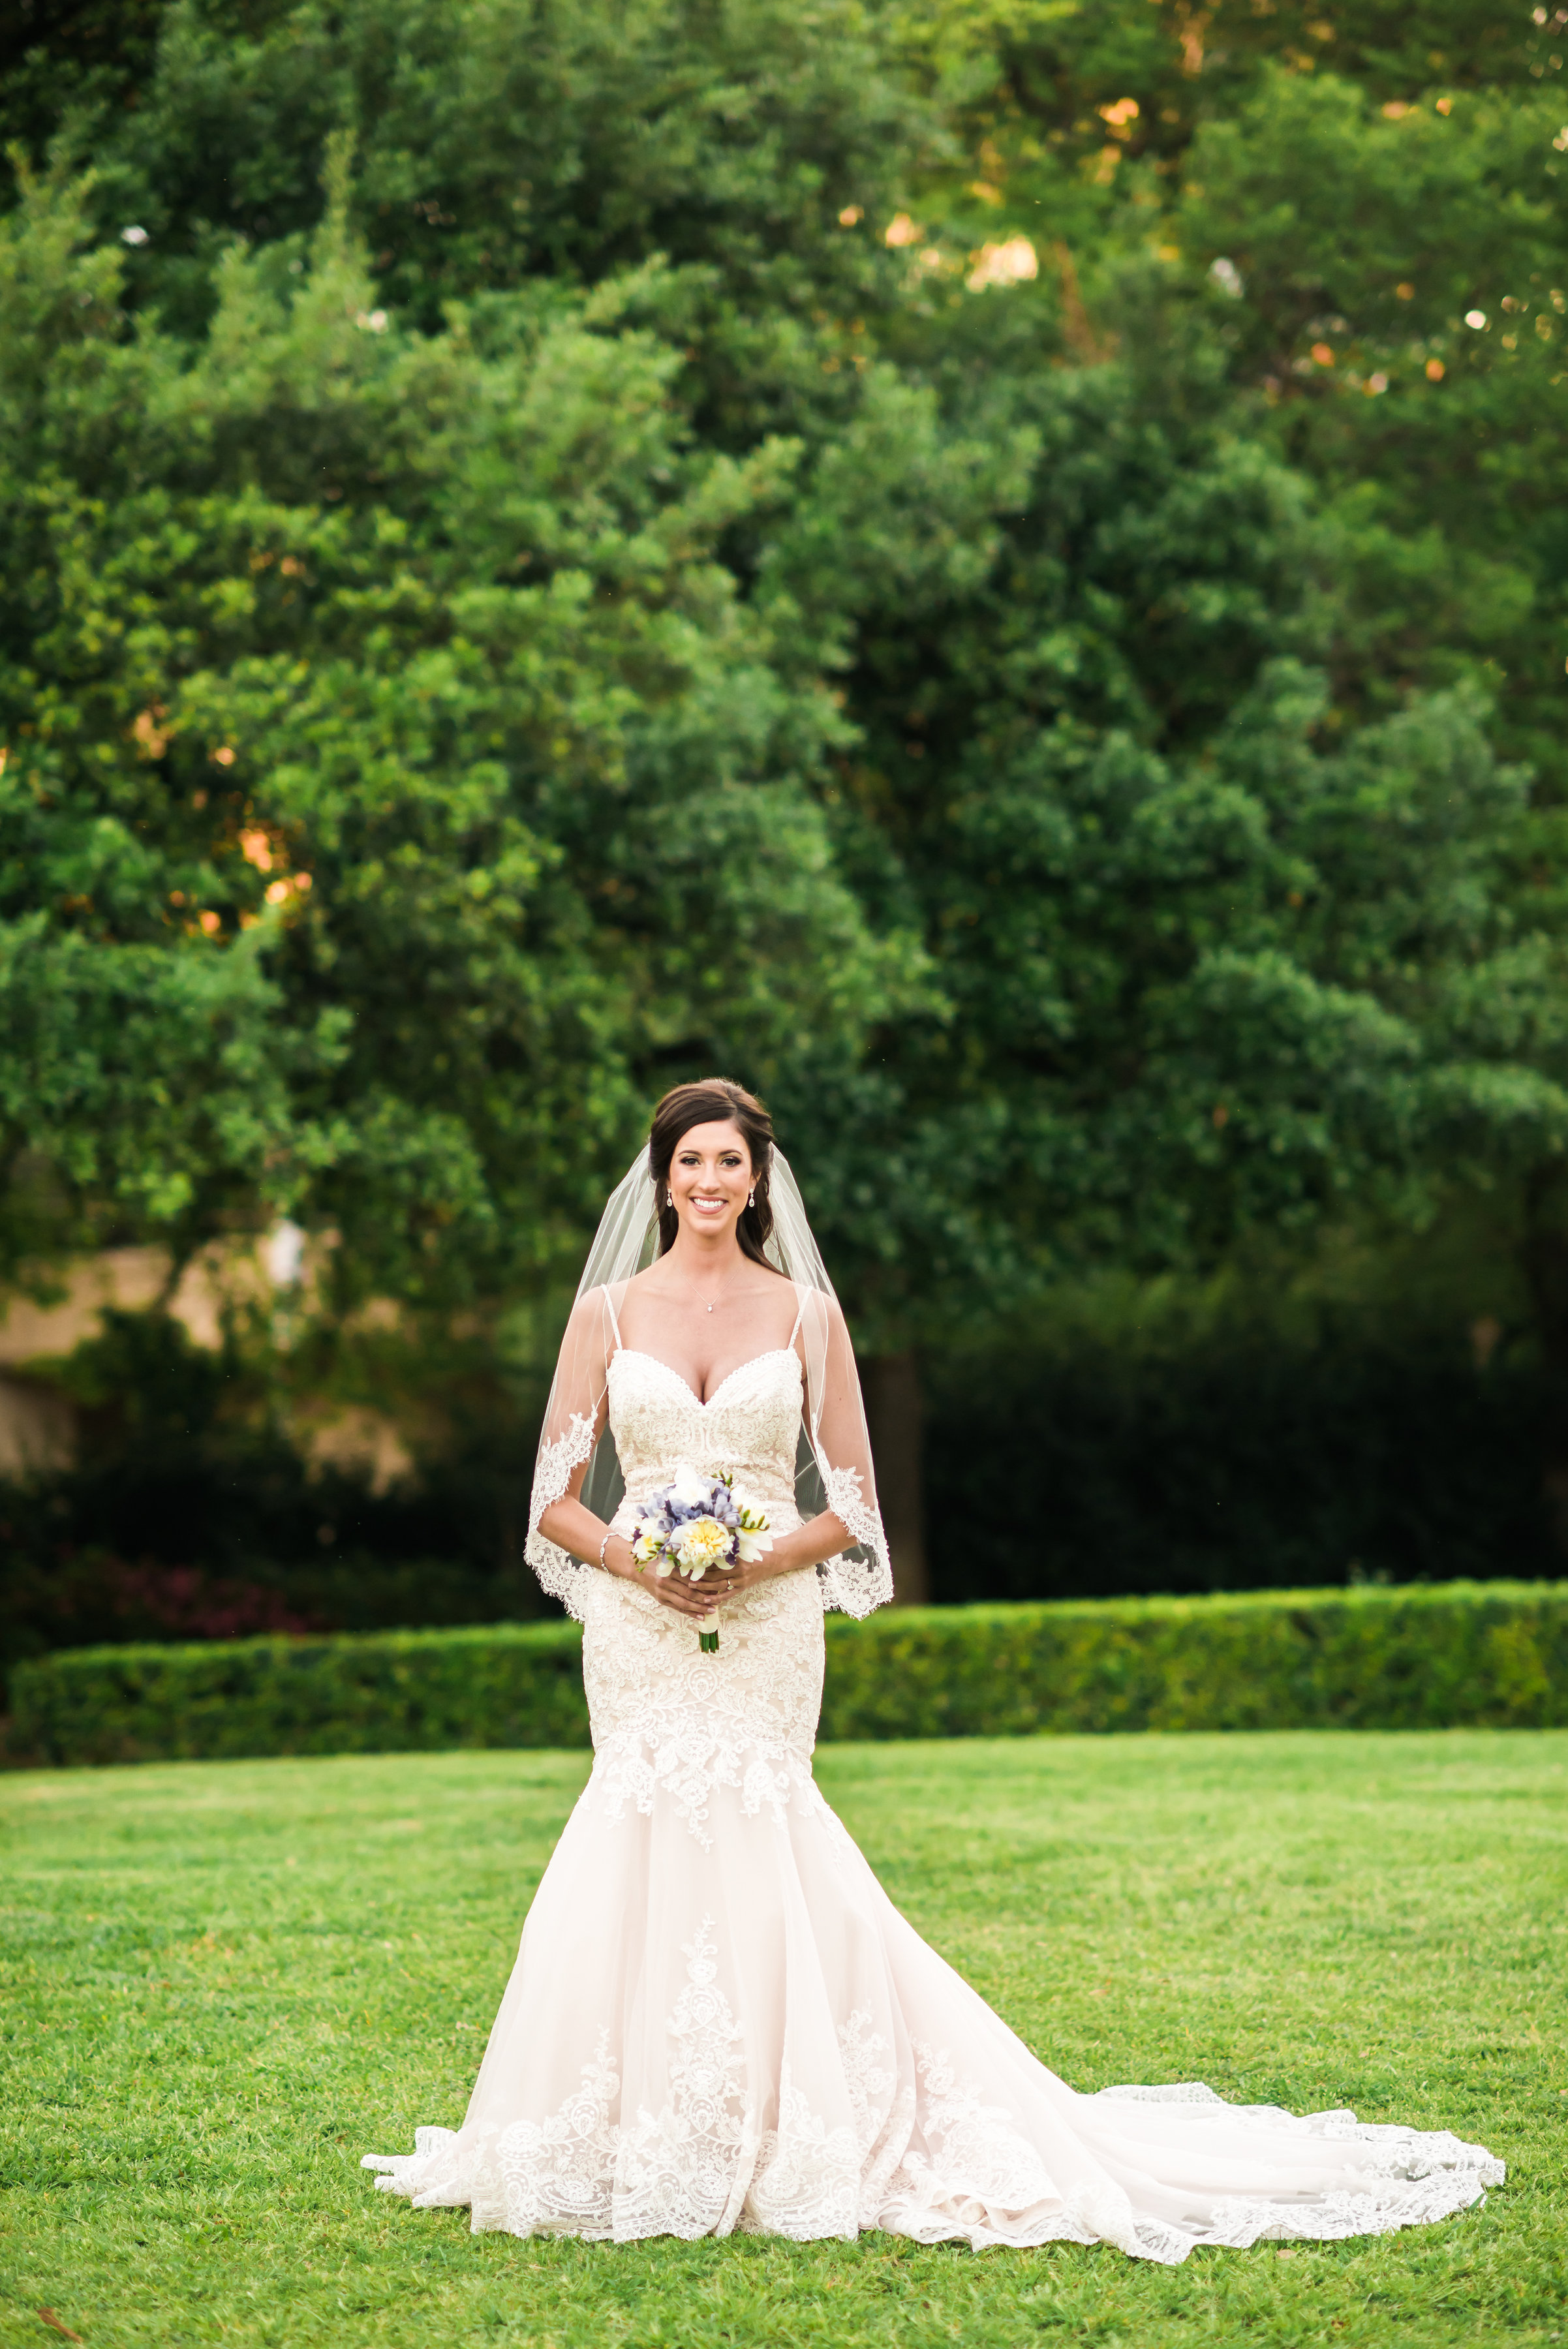 DFW Wedding: Morgan's Bridal Portraits | A Stylish Soiree, Wedding Planner